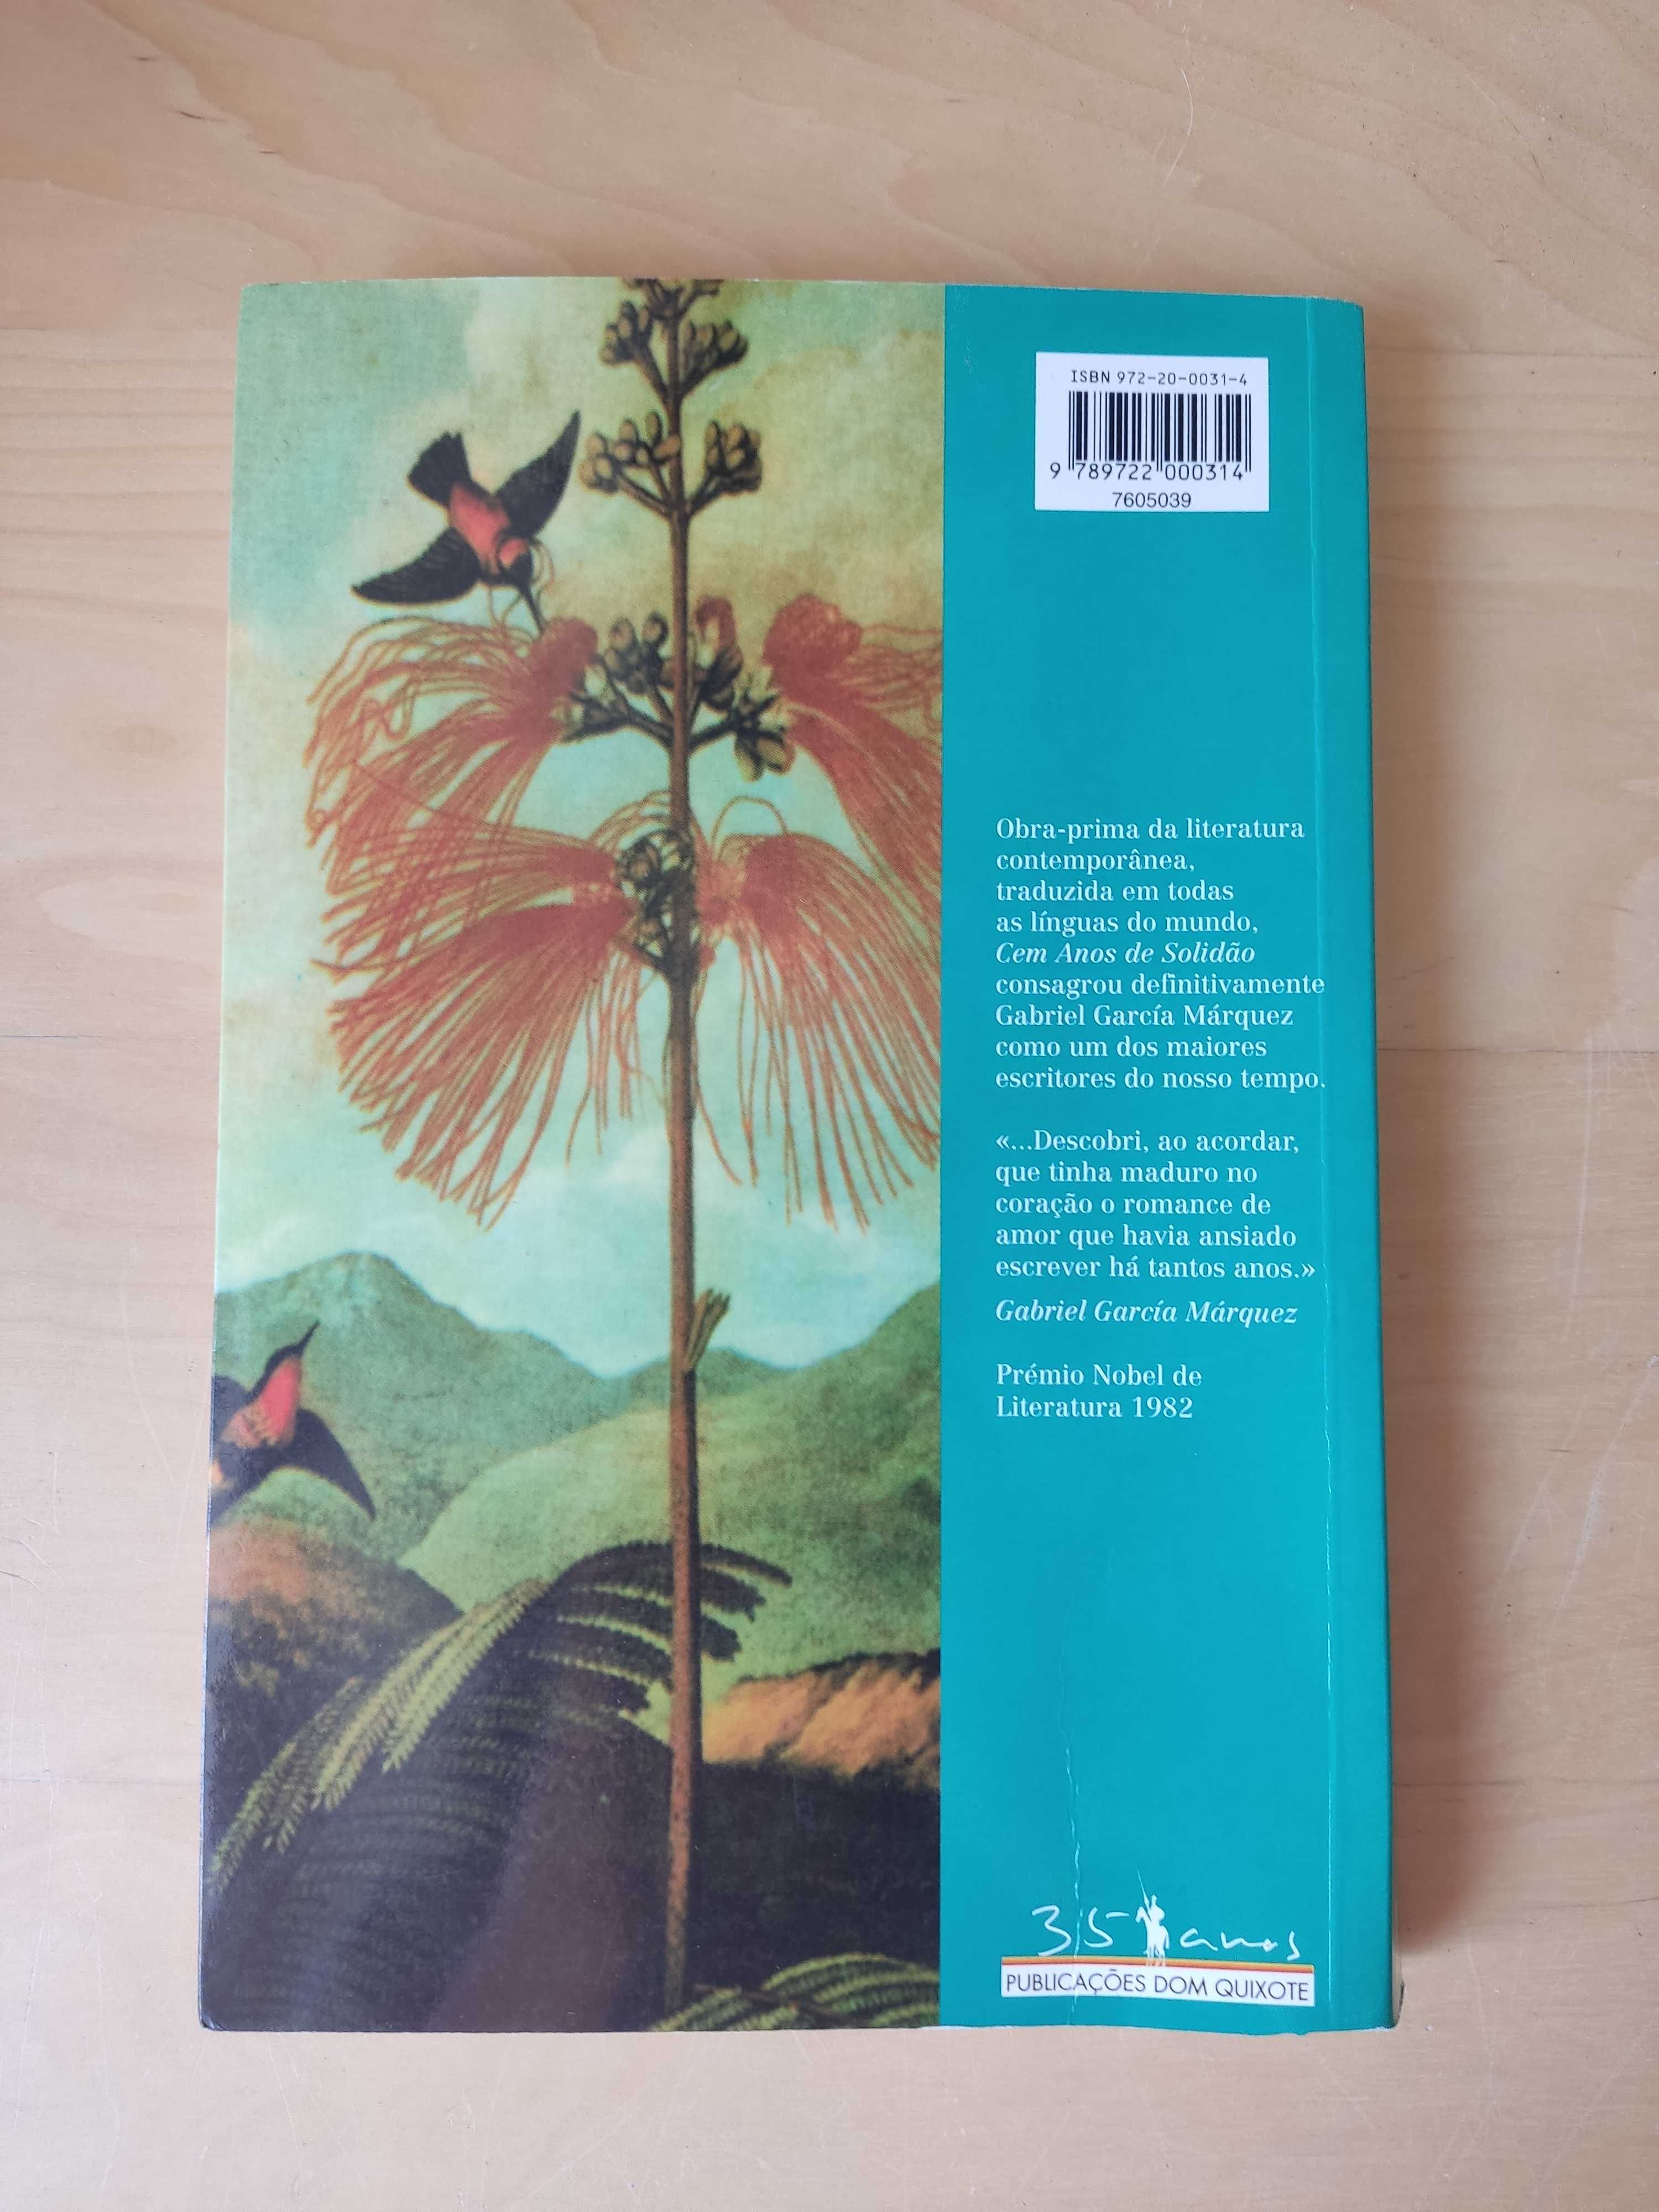 Livro "Cem anos de Solidão" , de Gabriel García Márquez